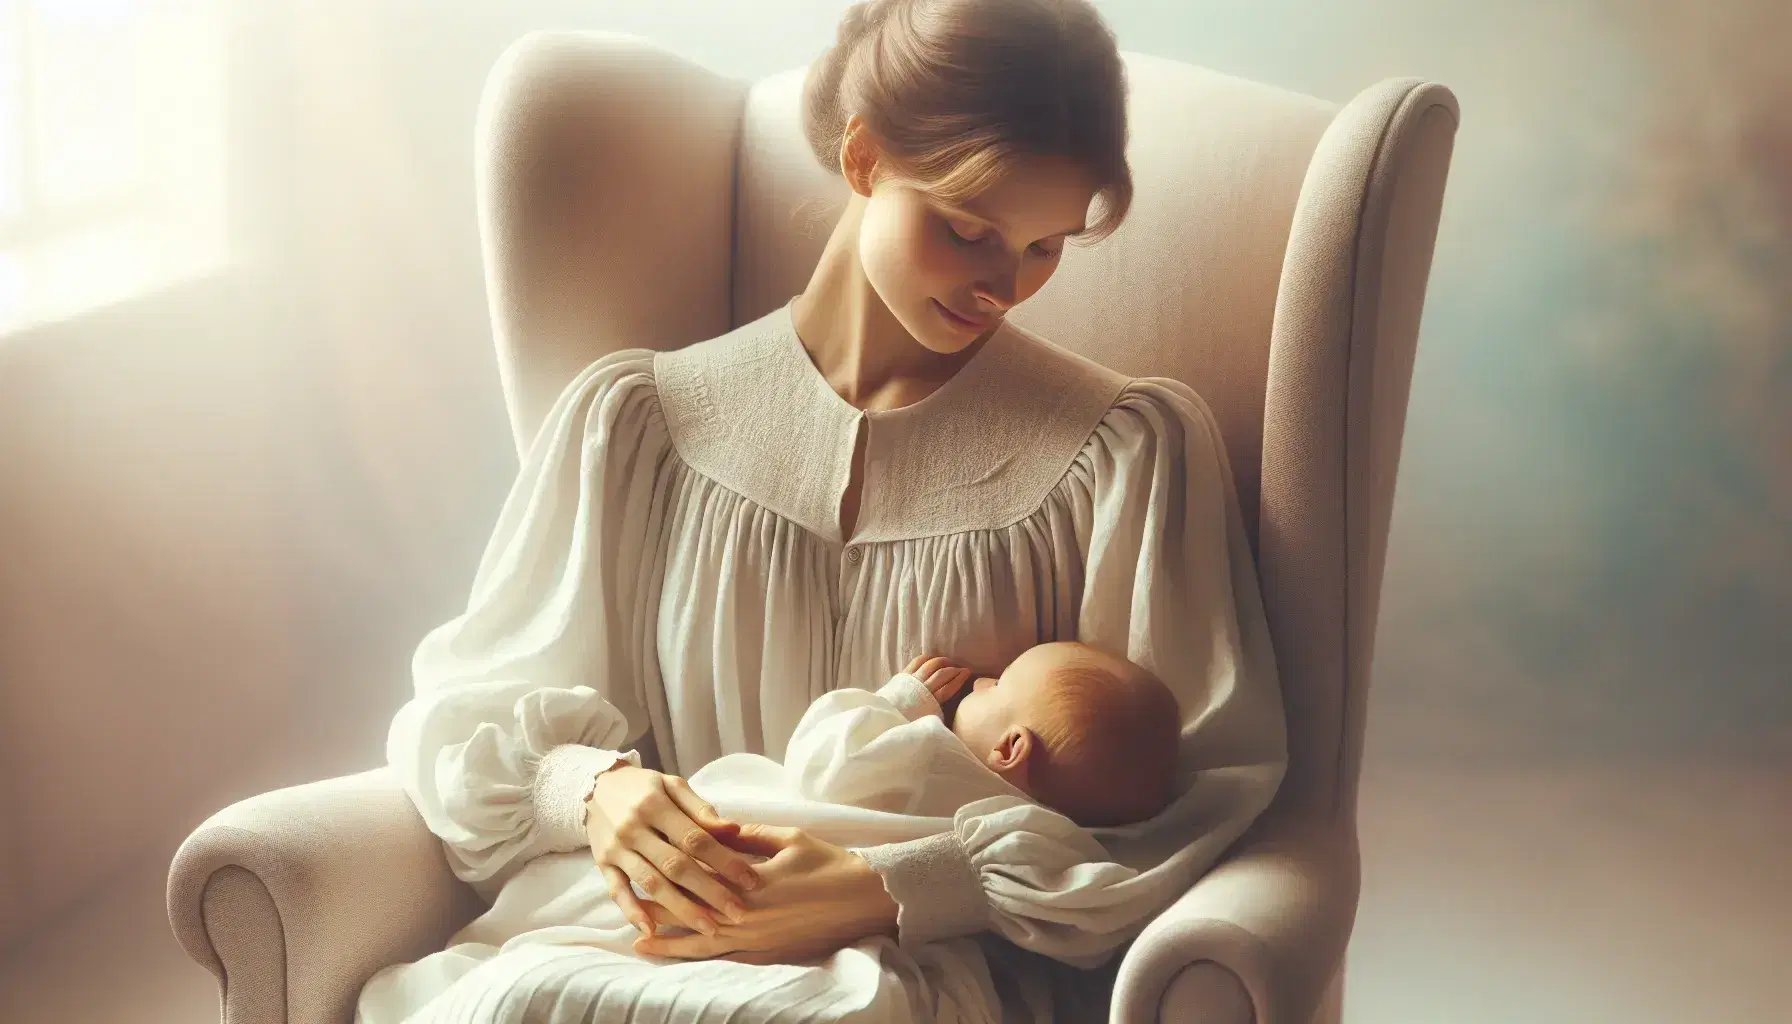 Madre serena amamantando a su recién nacido envuelto en manta blanca, sentada en sillón beige, con luz natural suave y fondo pastel.